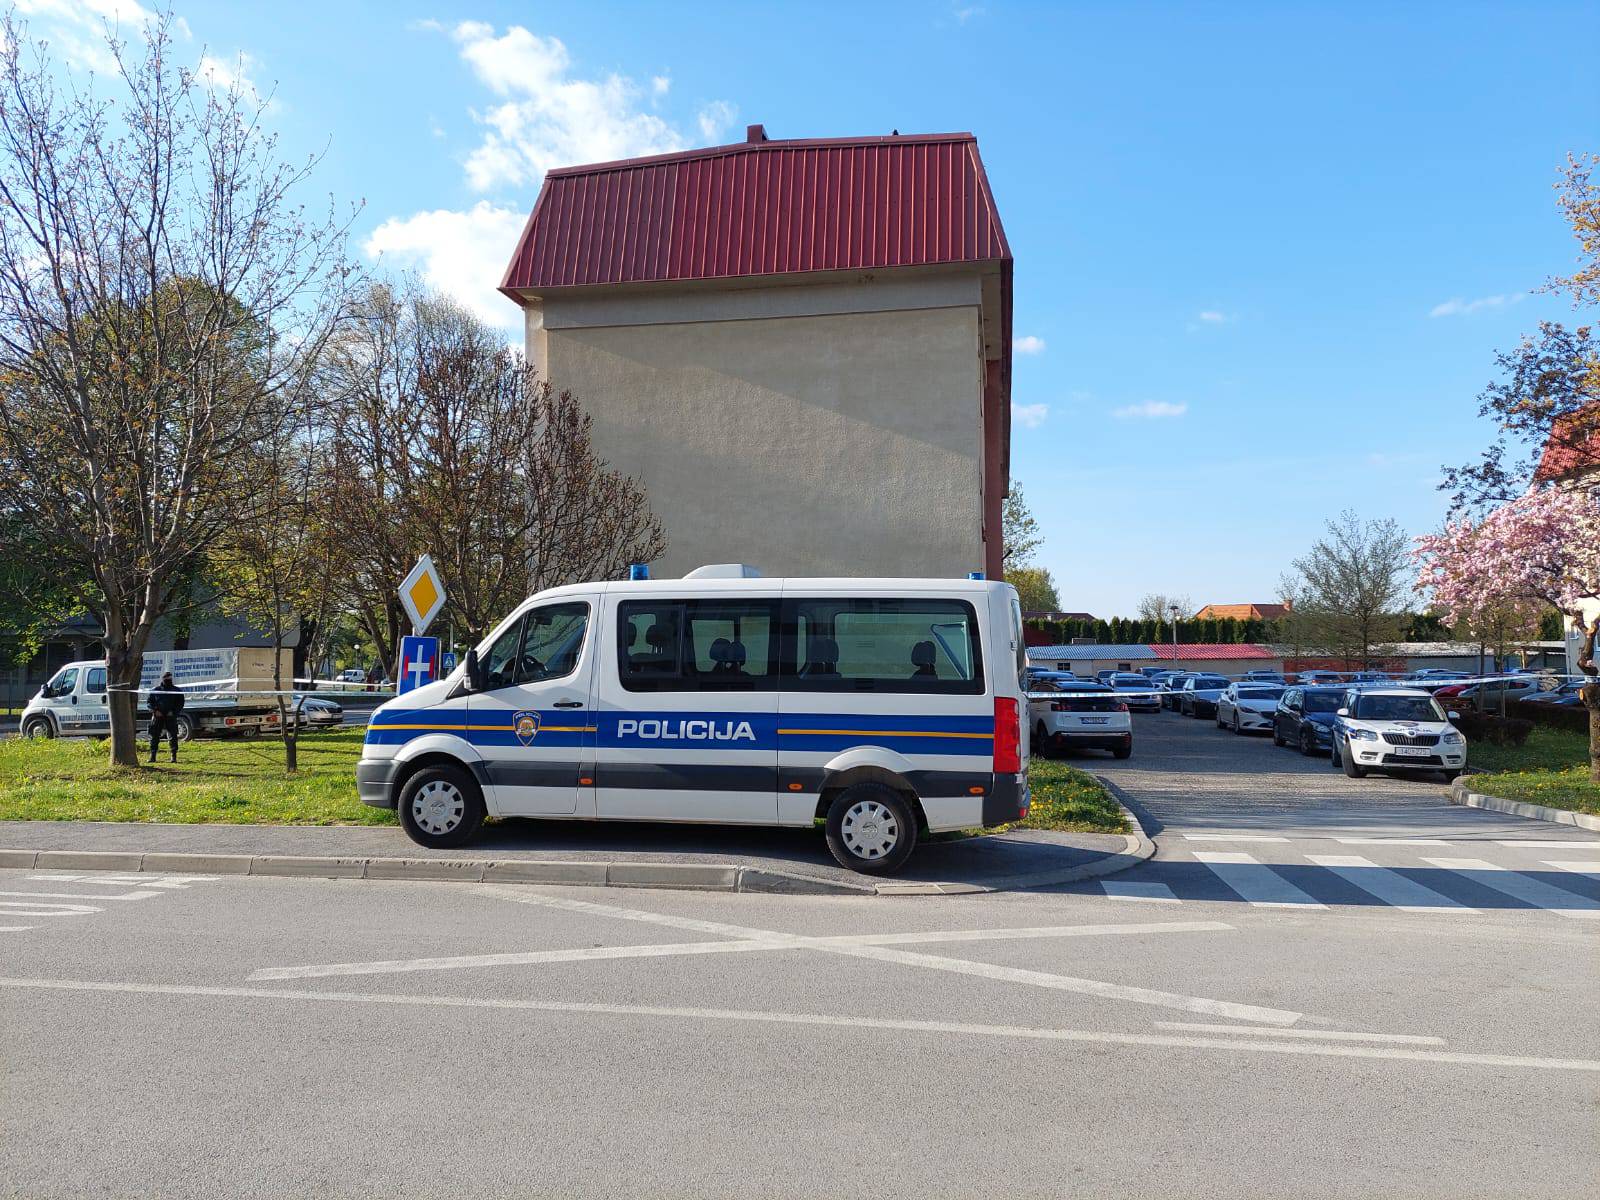 Strava u Ivancu: Muškarac ubio ženu pa je onda presudio i sebi, oboje su bili policijski službenici